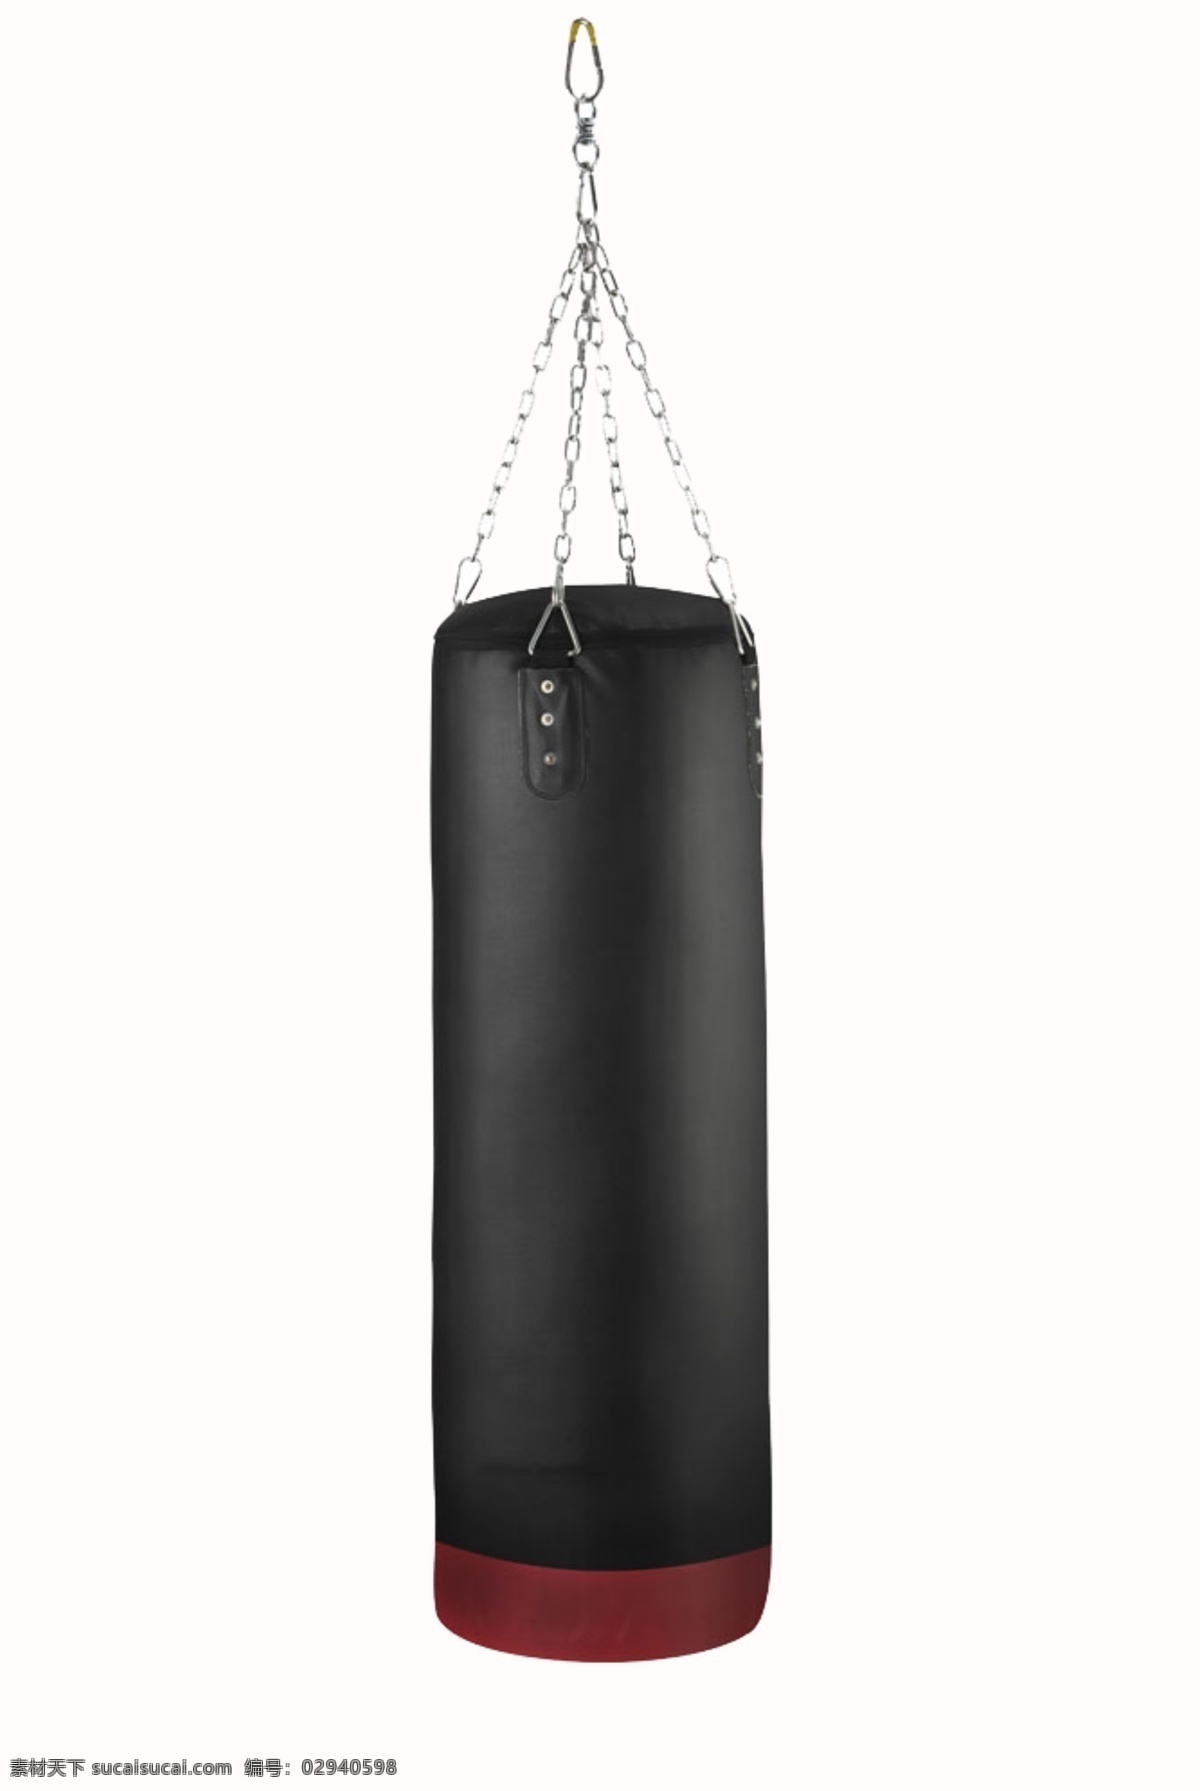 黑色 产品实物 健身 健身器材 吊起的沙袋 吊着的沙袋 拳击袋 健身物品 素材图